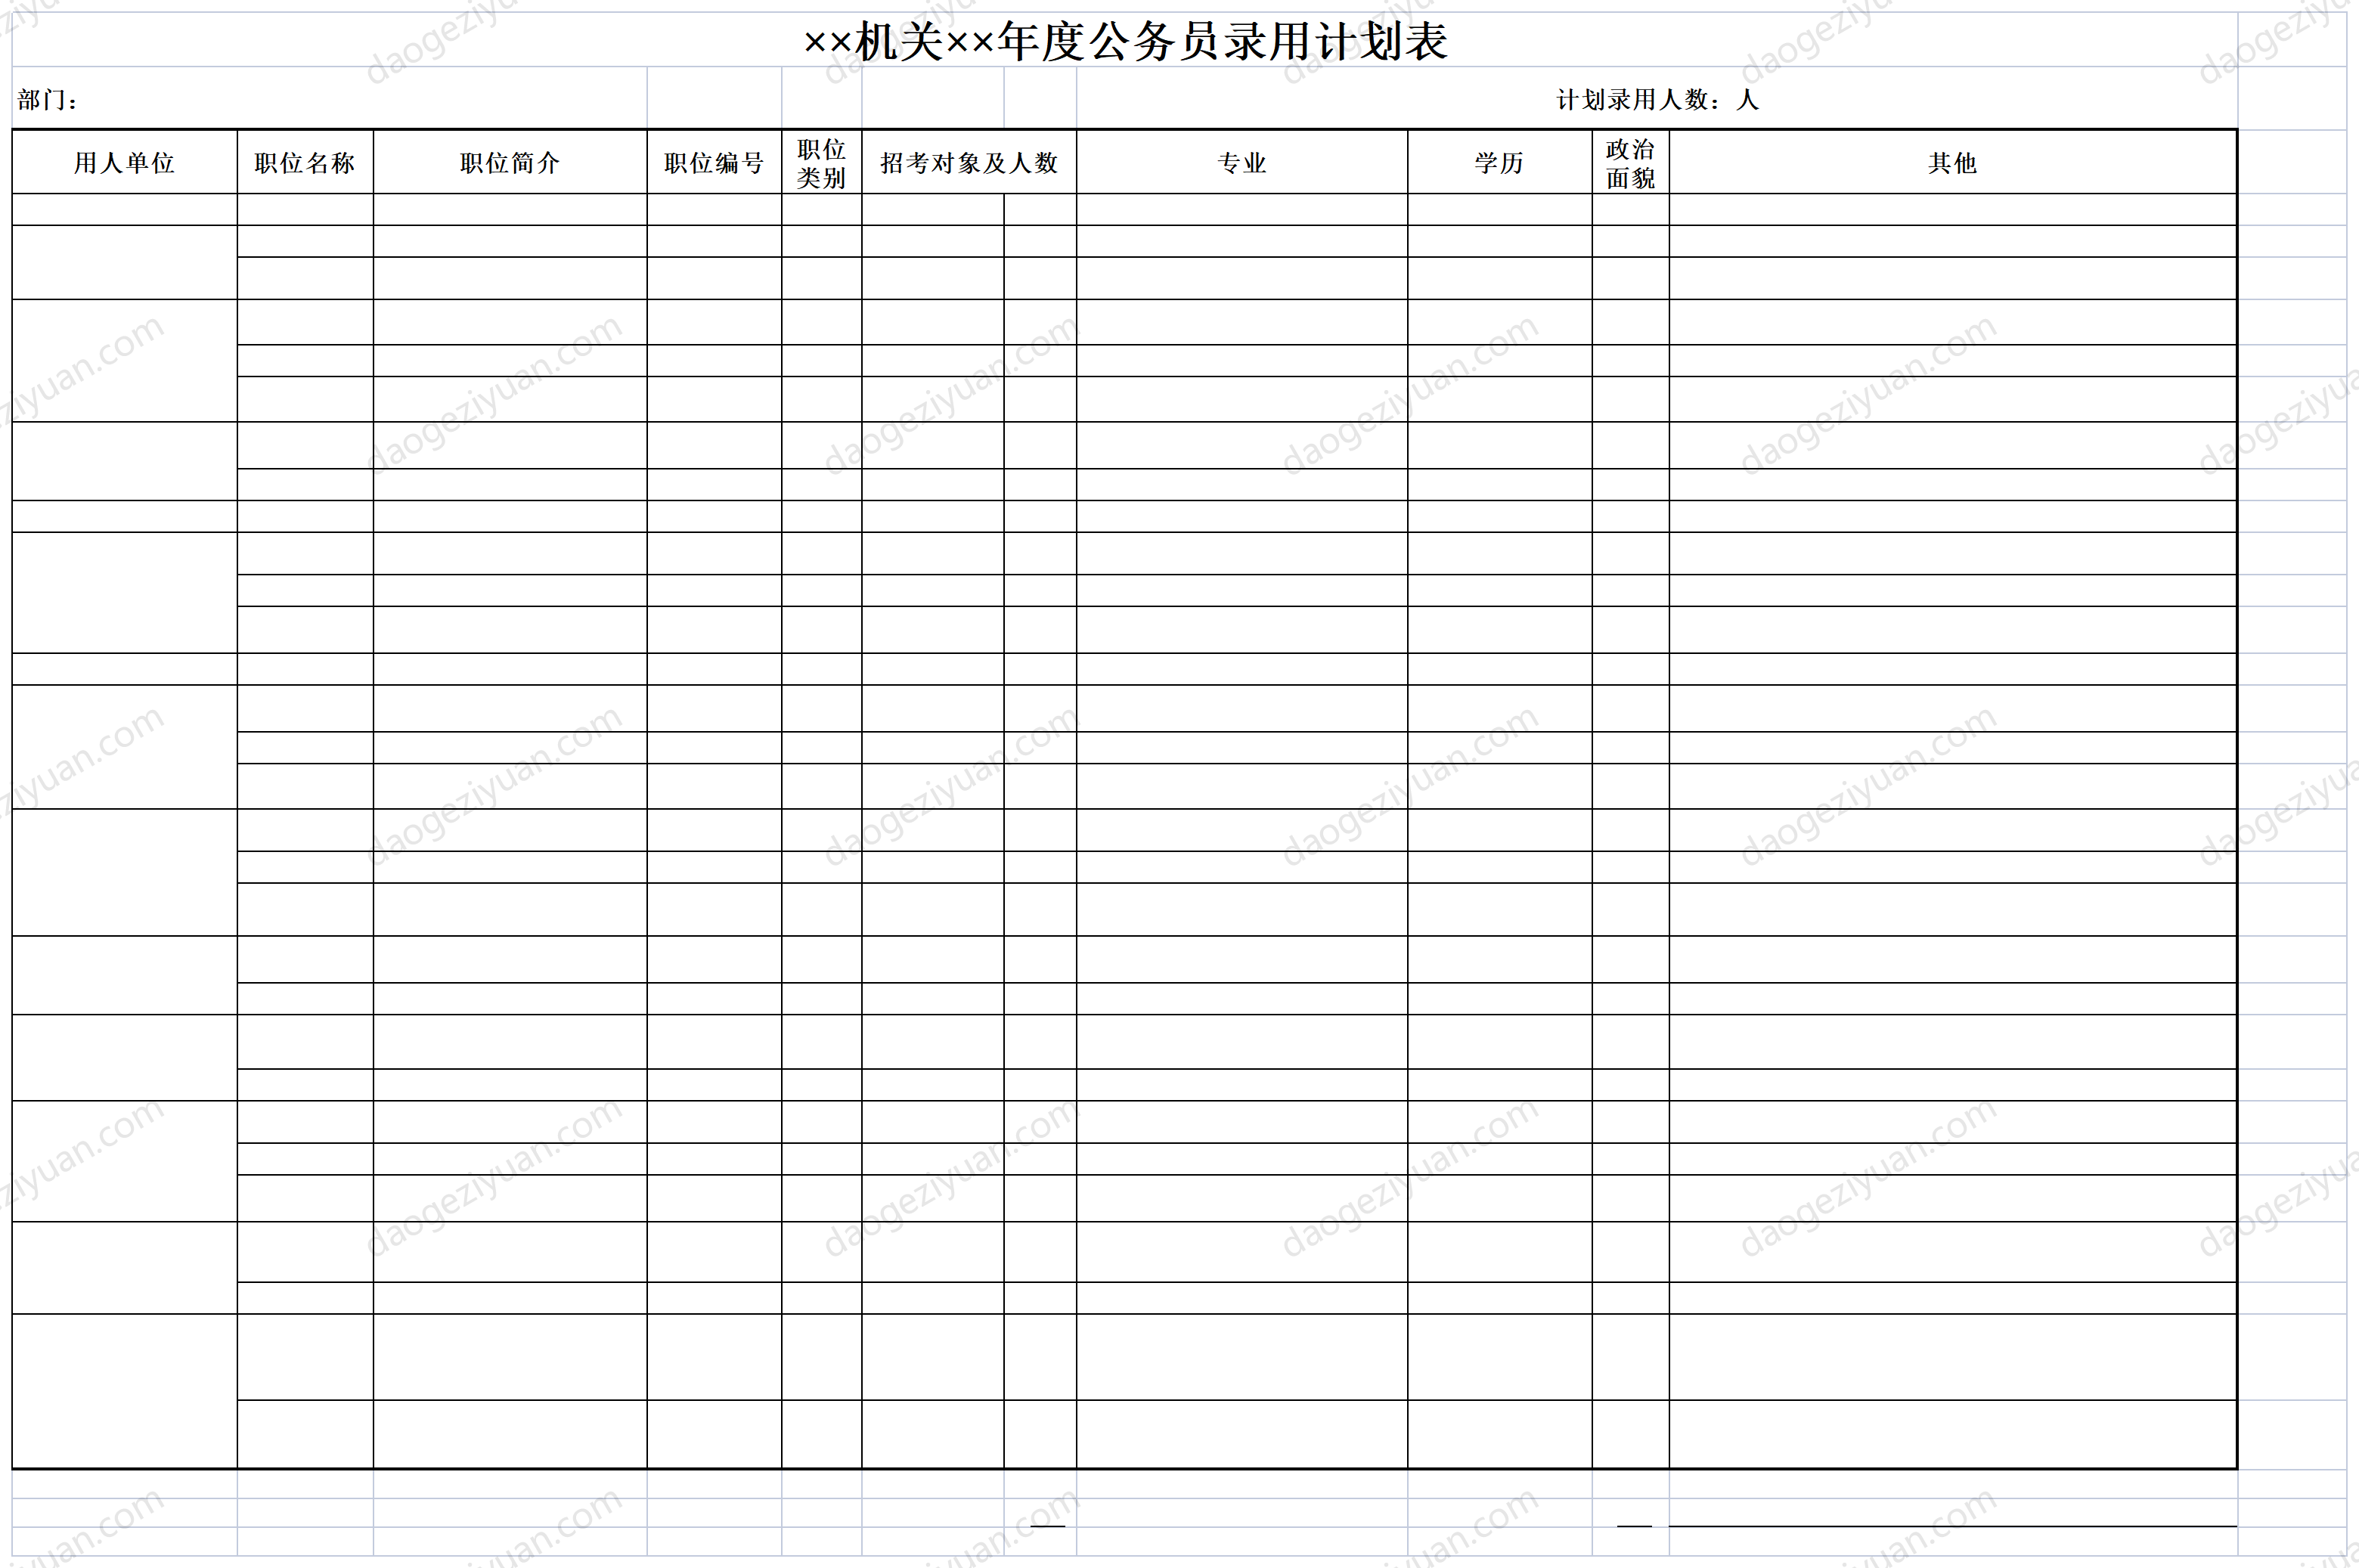 机关年度公务员录用计划表.xls